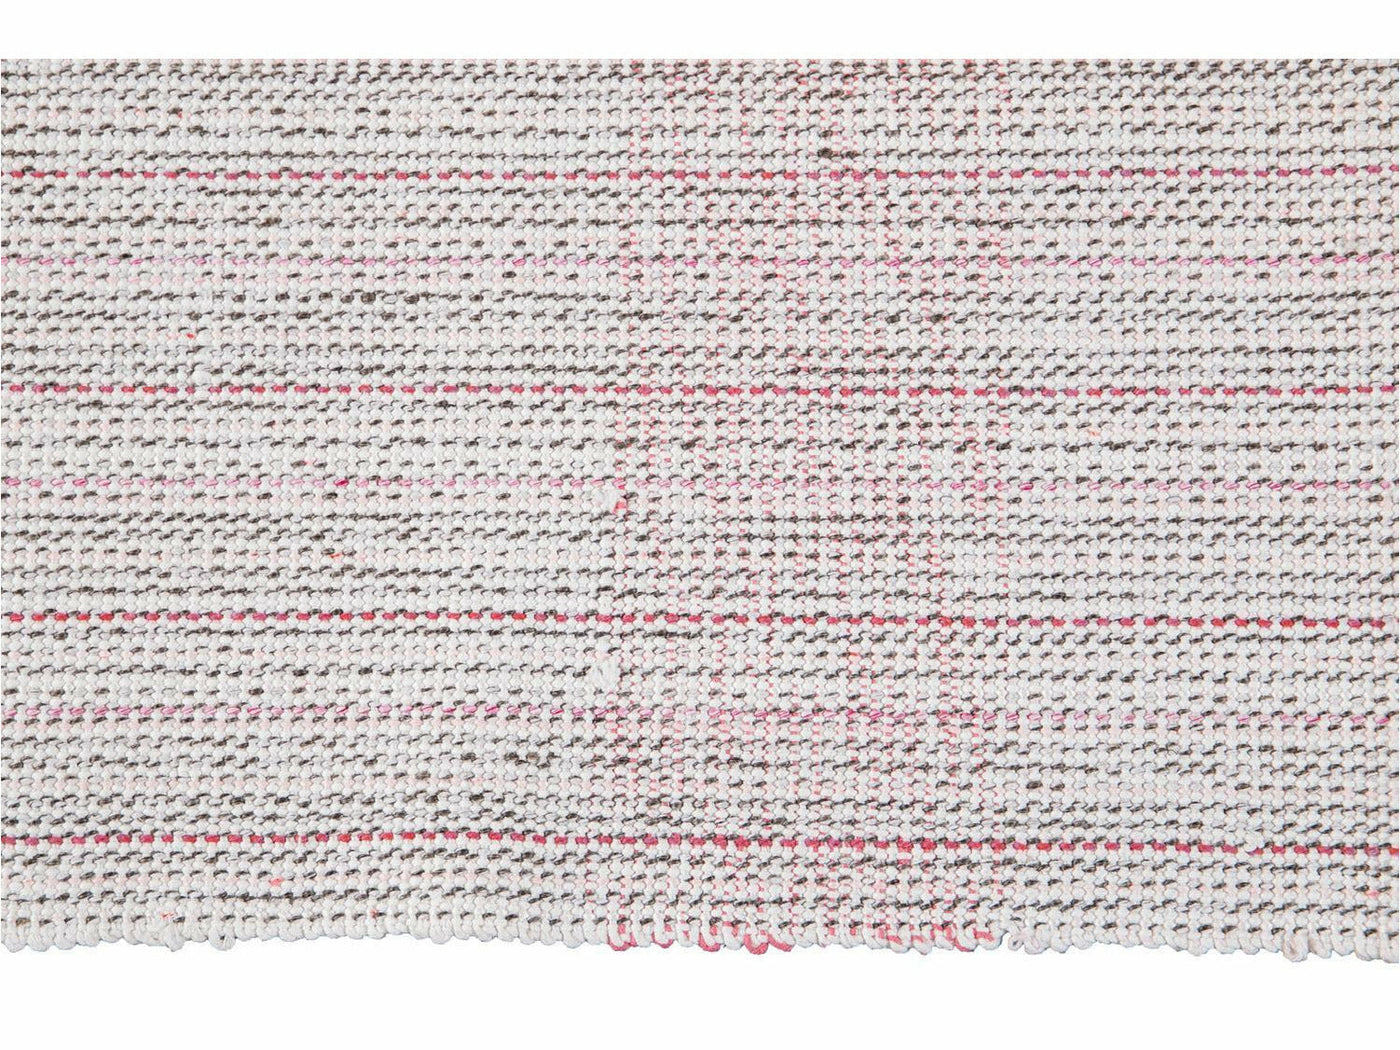 Vintage Flat-Weave Wool Rug 10 X 13